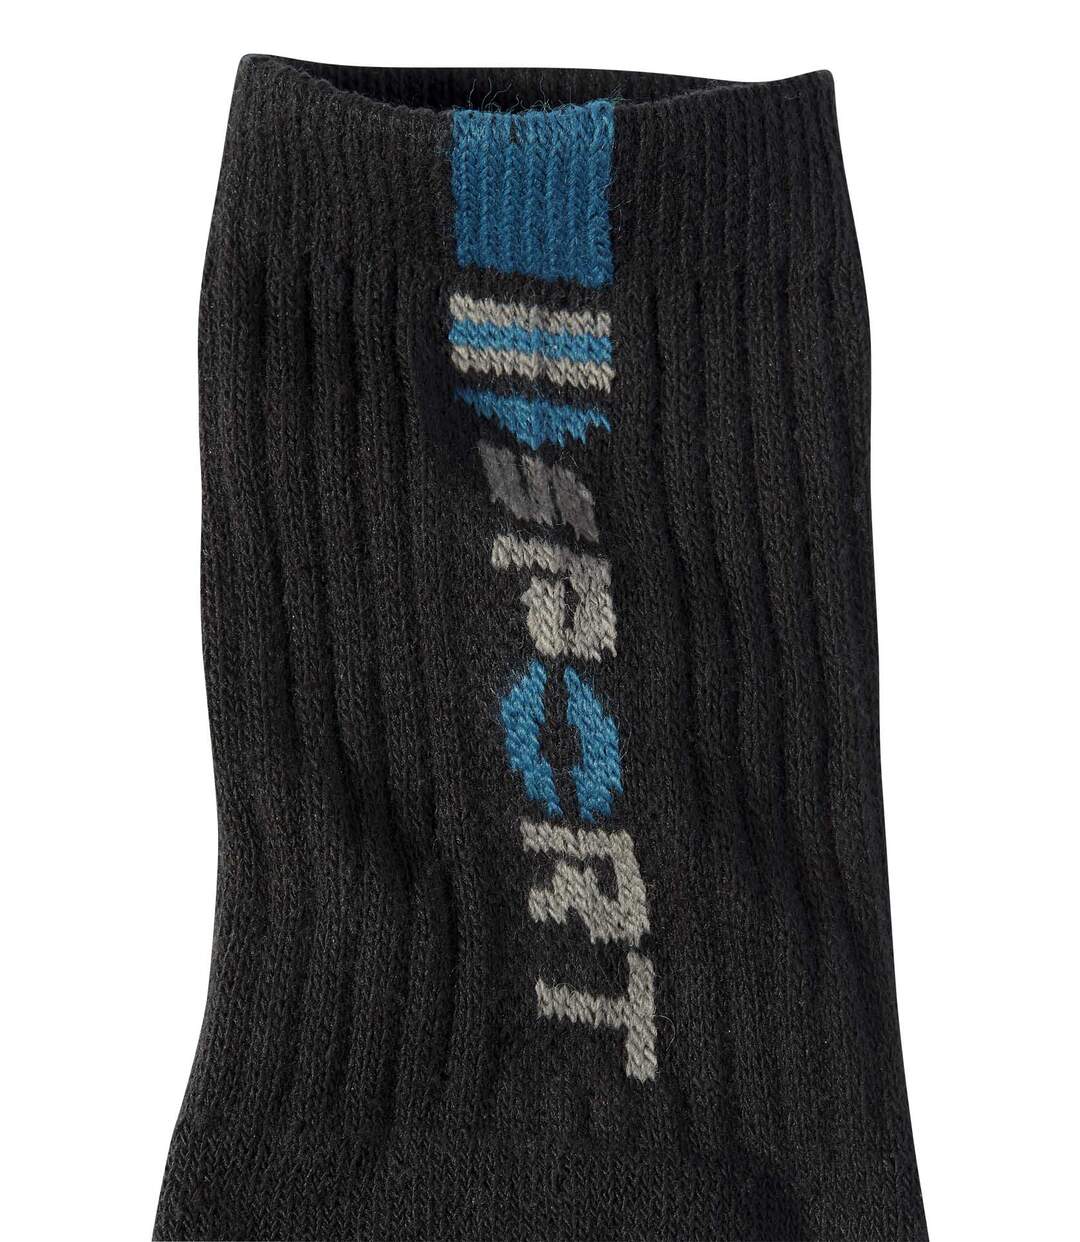 Pack of 4 Pairs of Men's Sports Socks - Black Atlas For Men